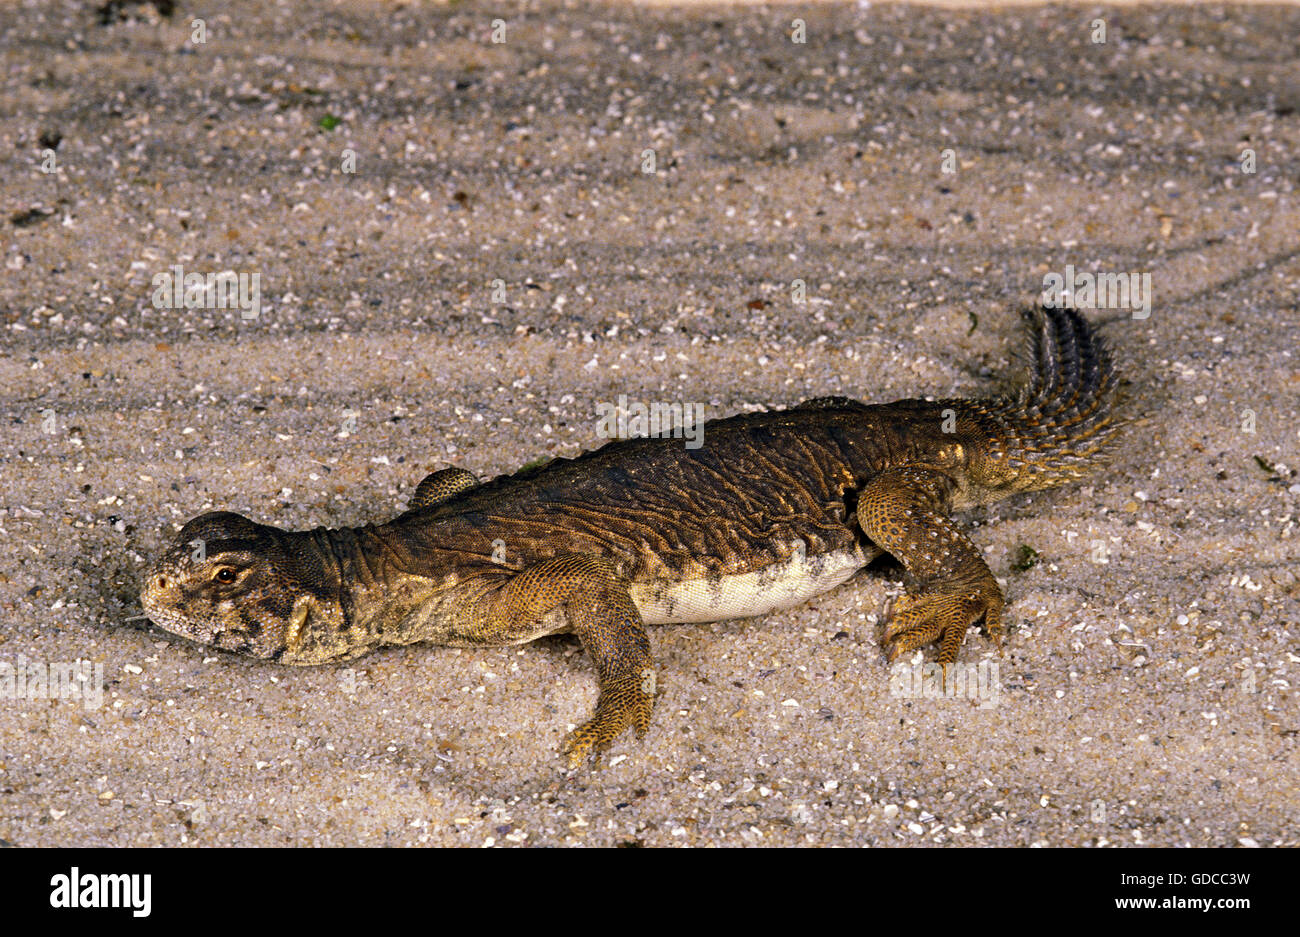 Egyptian Spiny-Tailed Lizard, uromastyx aegyptius, Adult Stock Photo